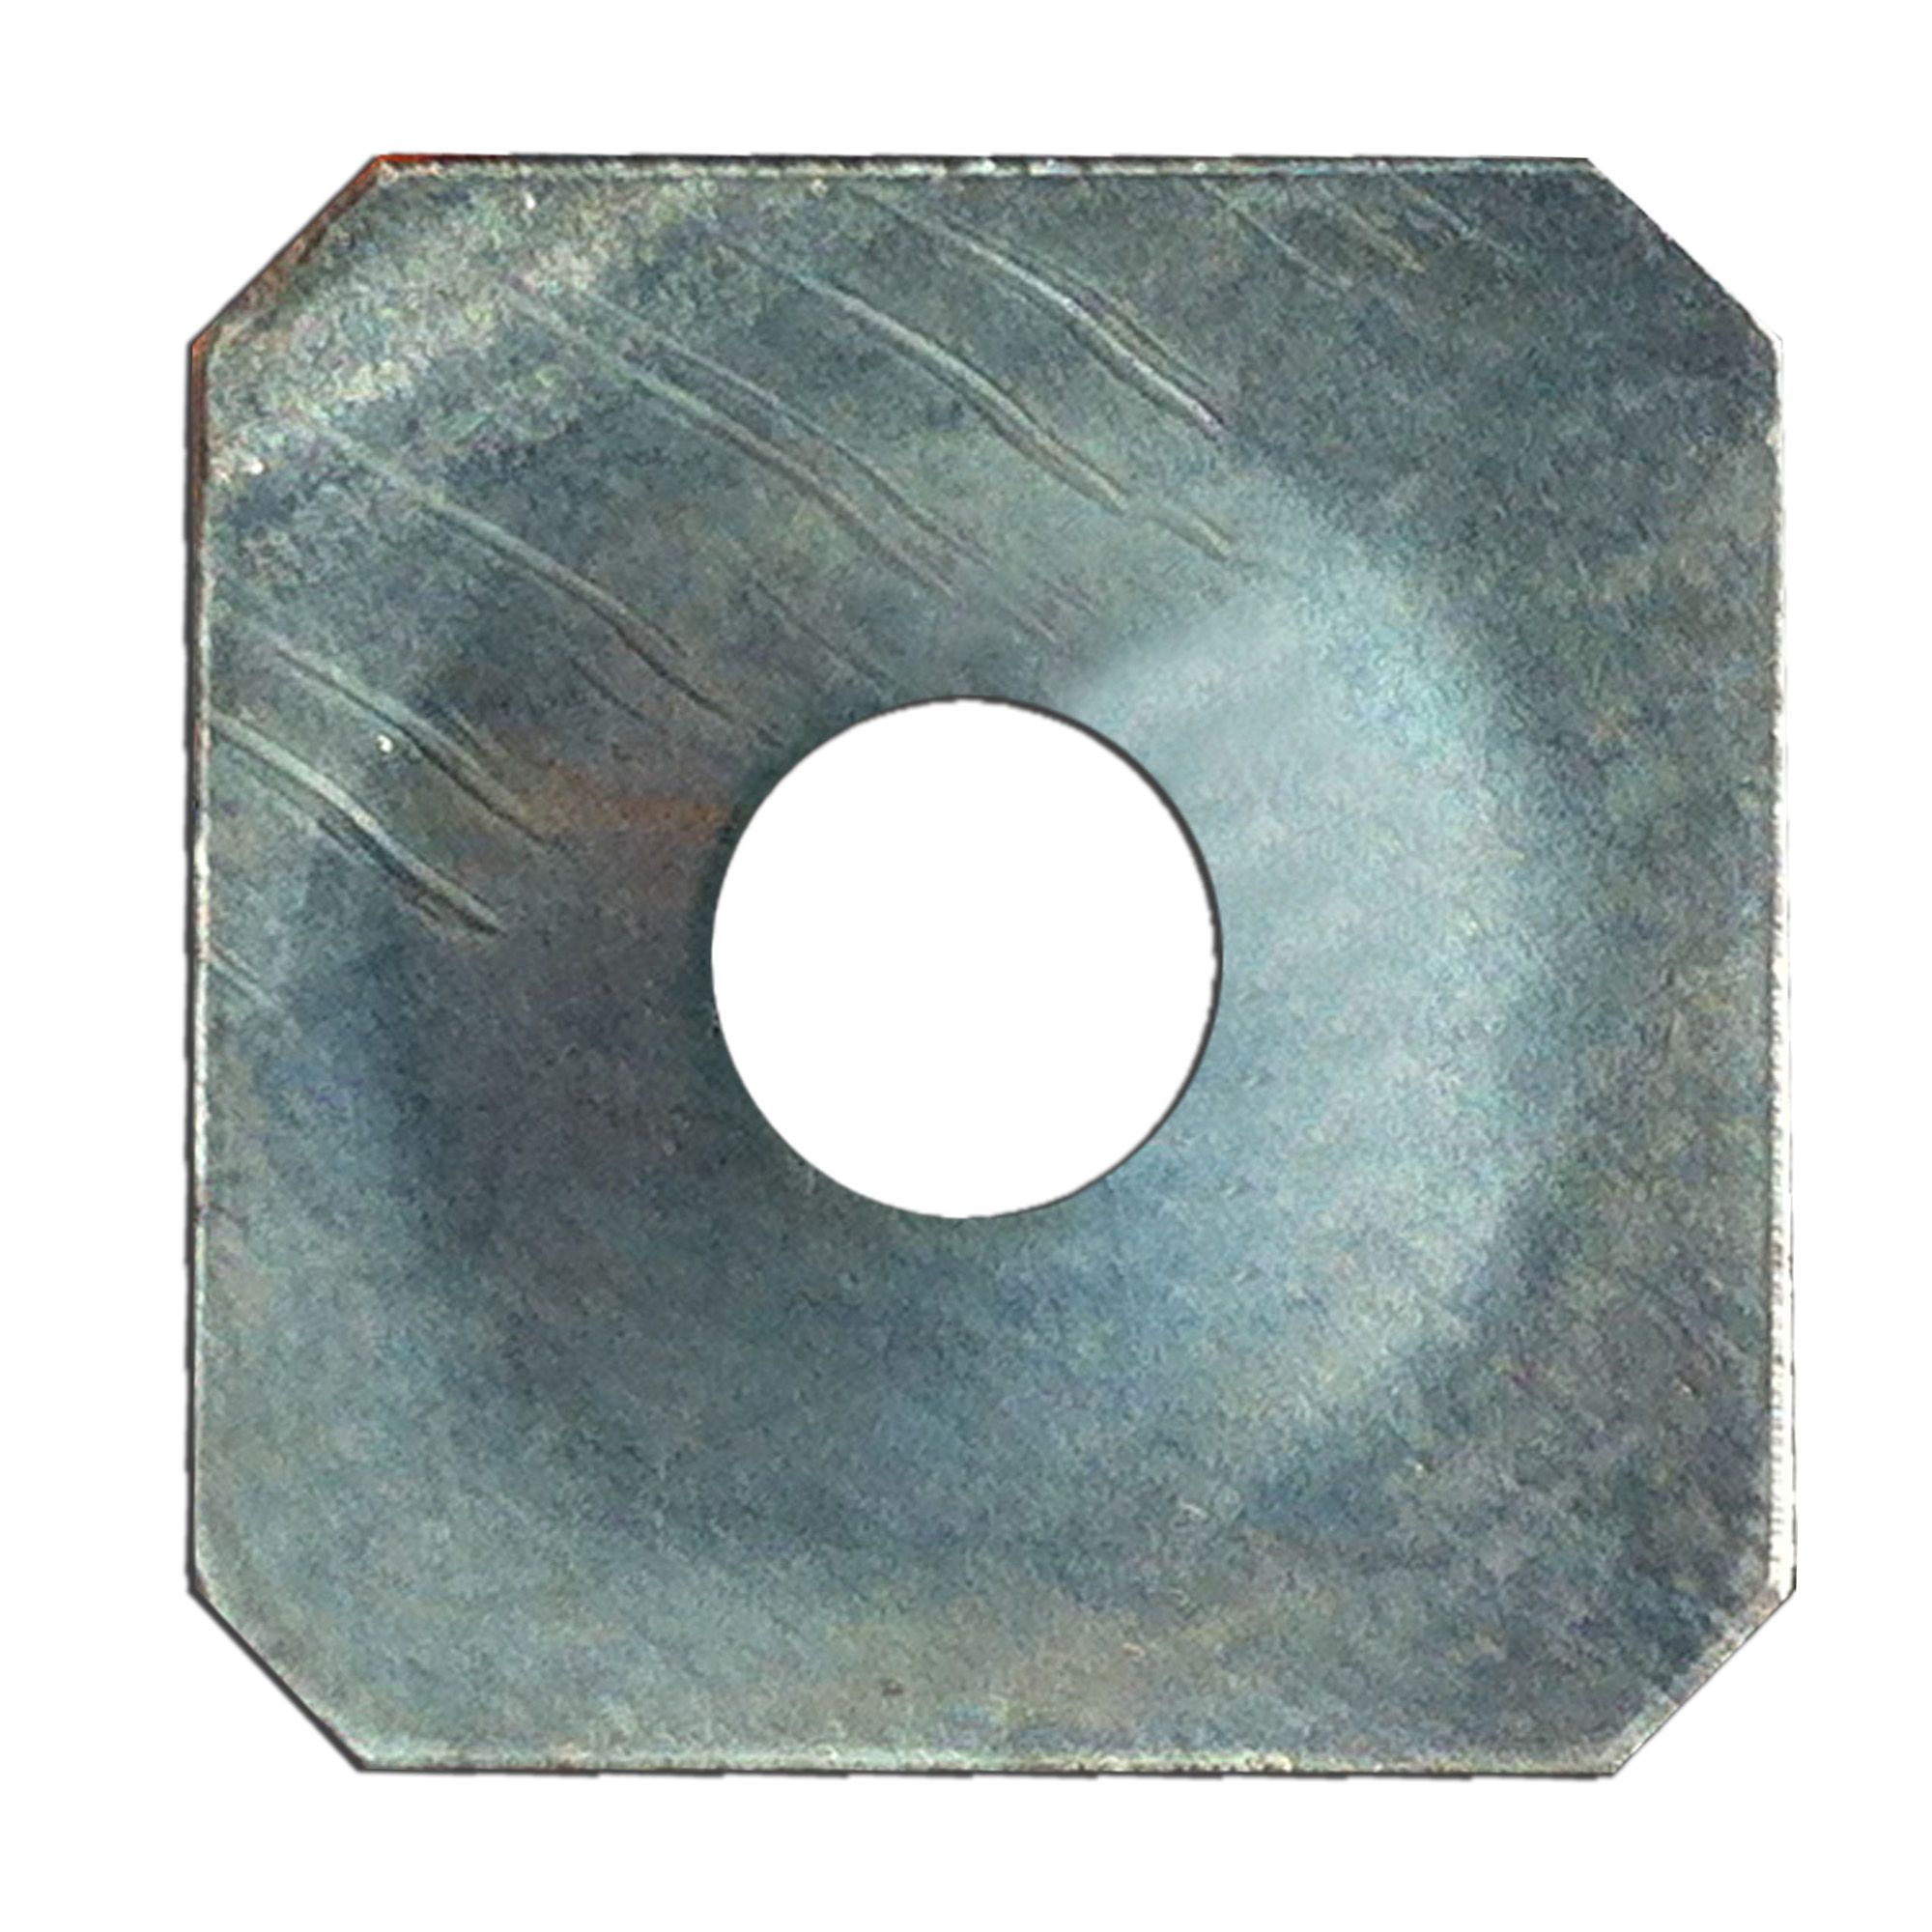 Rondelle de métal pour isolant, 1 x 1 x 6 mm, 500/boite